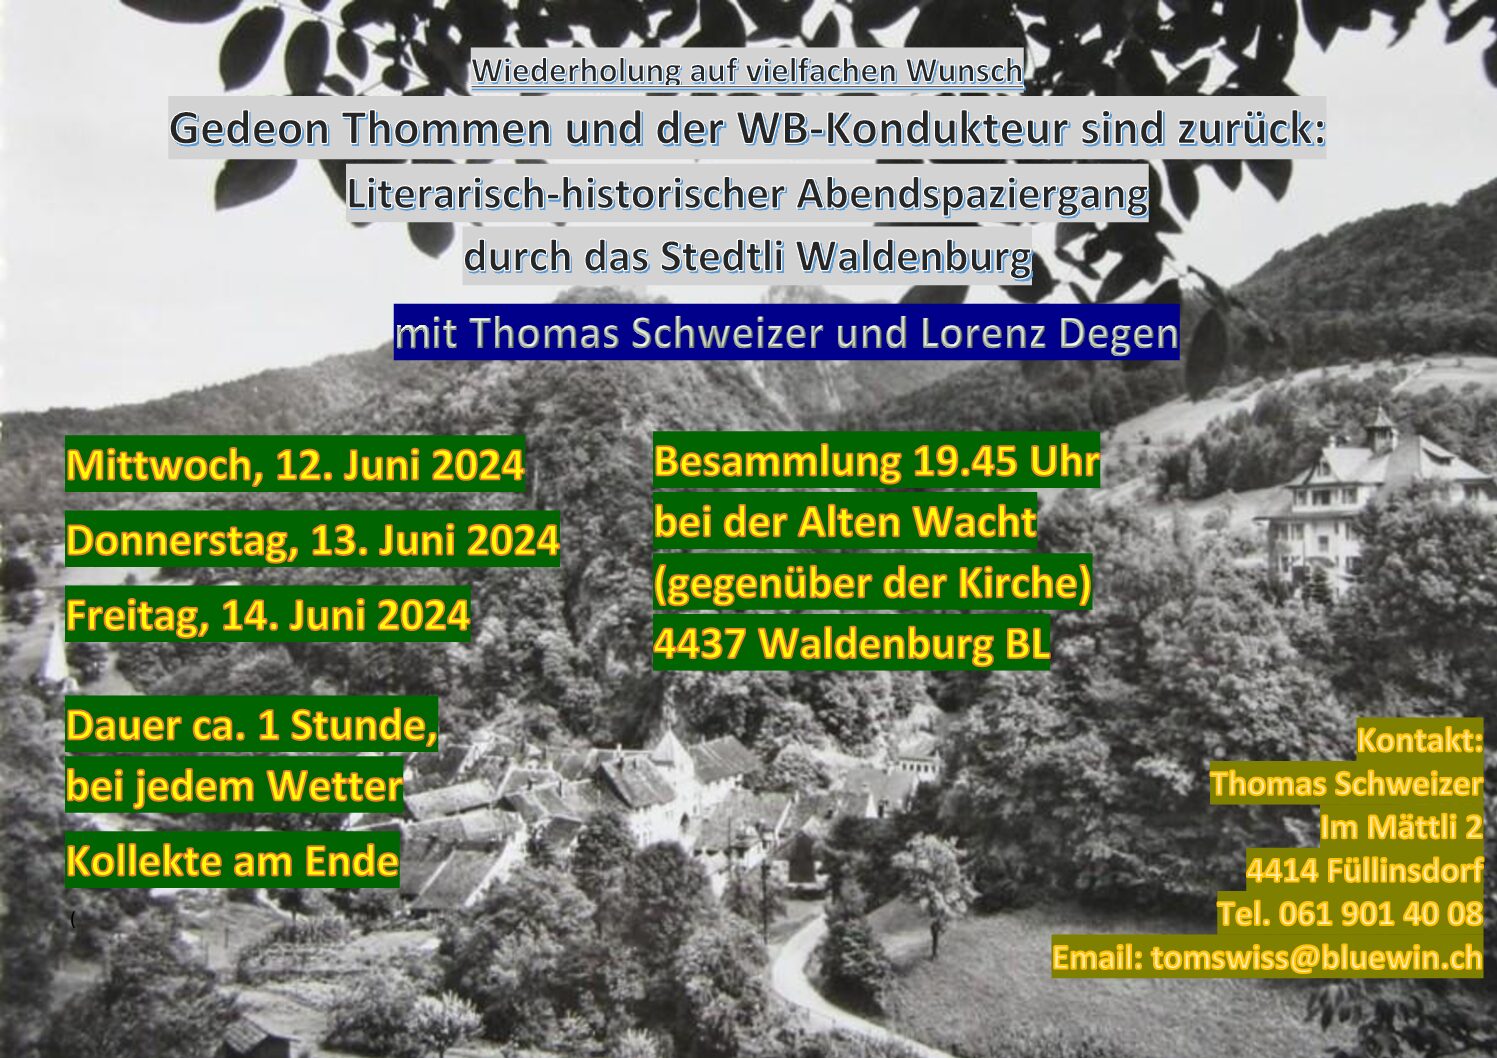 Stedtliführungen mit Lorenz Degen und Thomas Schweizer